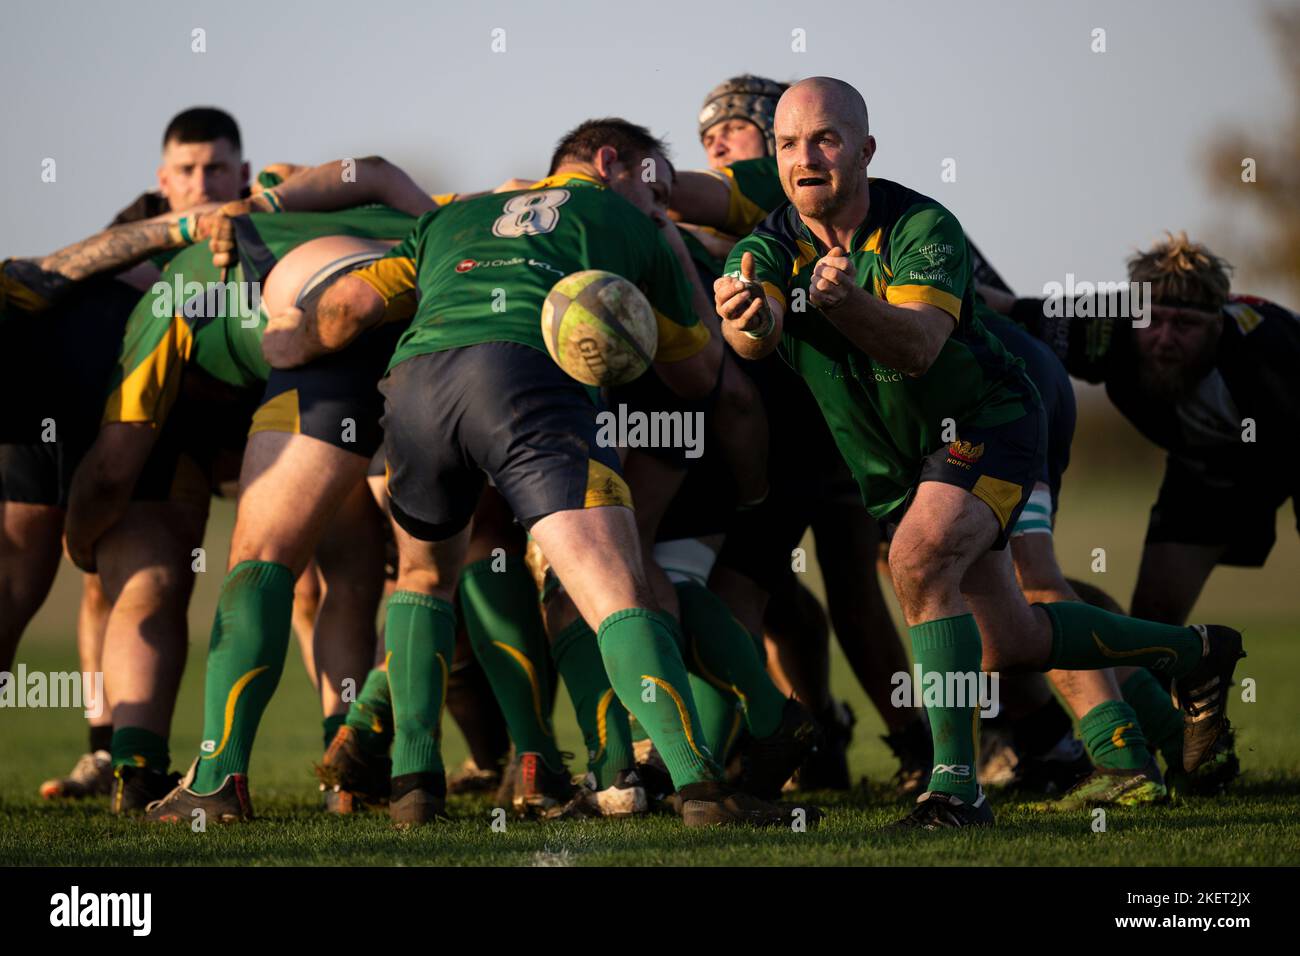 Rugby-Spieler in Aktion. Dorset, England, Vereinigtes Königreich. Stockfoto